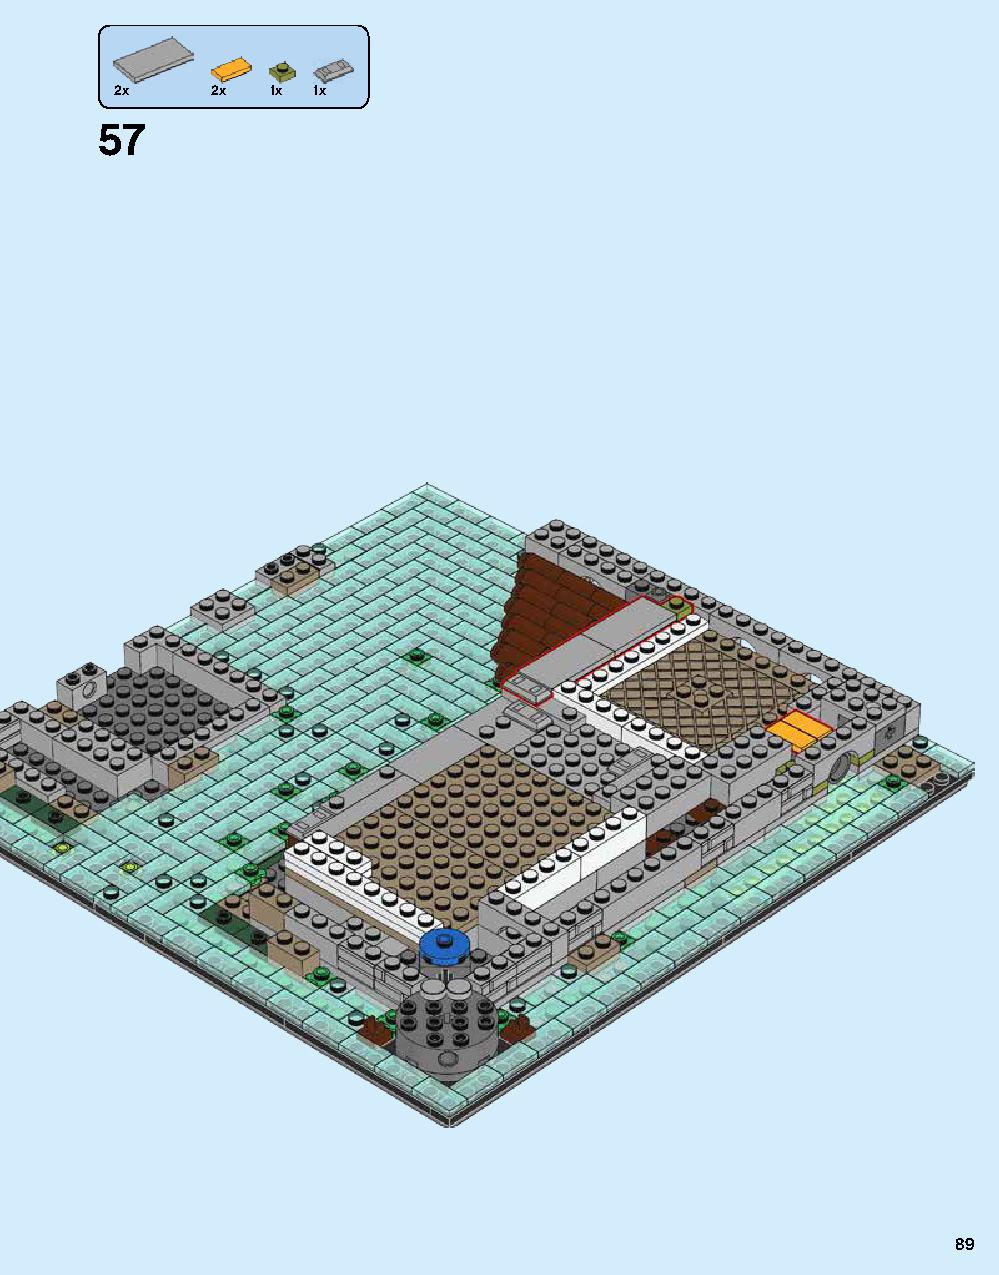 ニンジャゴー シティ 70620 レゴの商品情報 レゴの説明書・組立方法 89 page